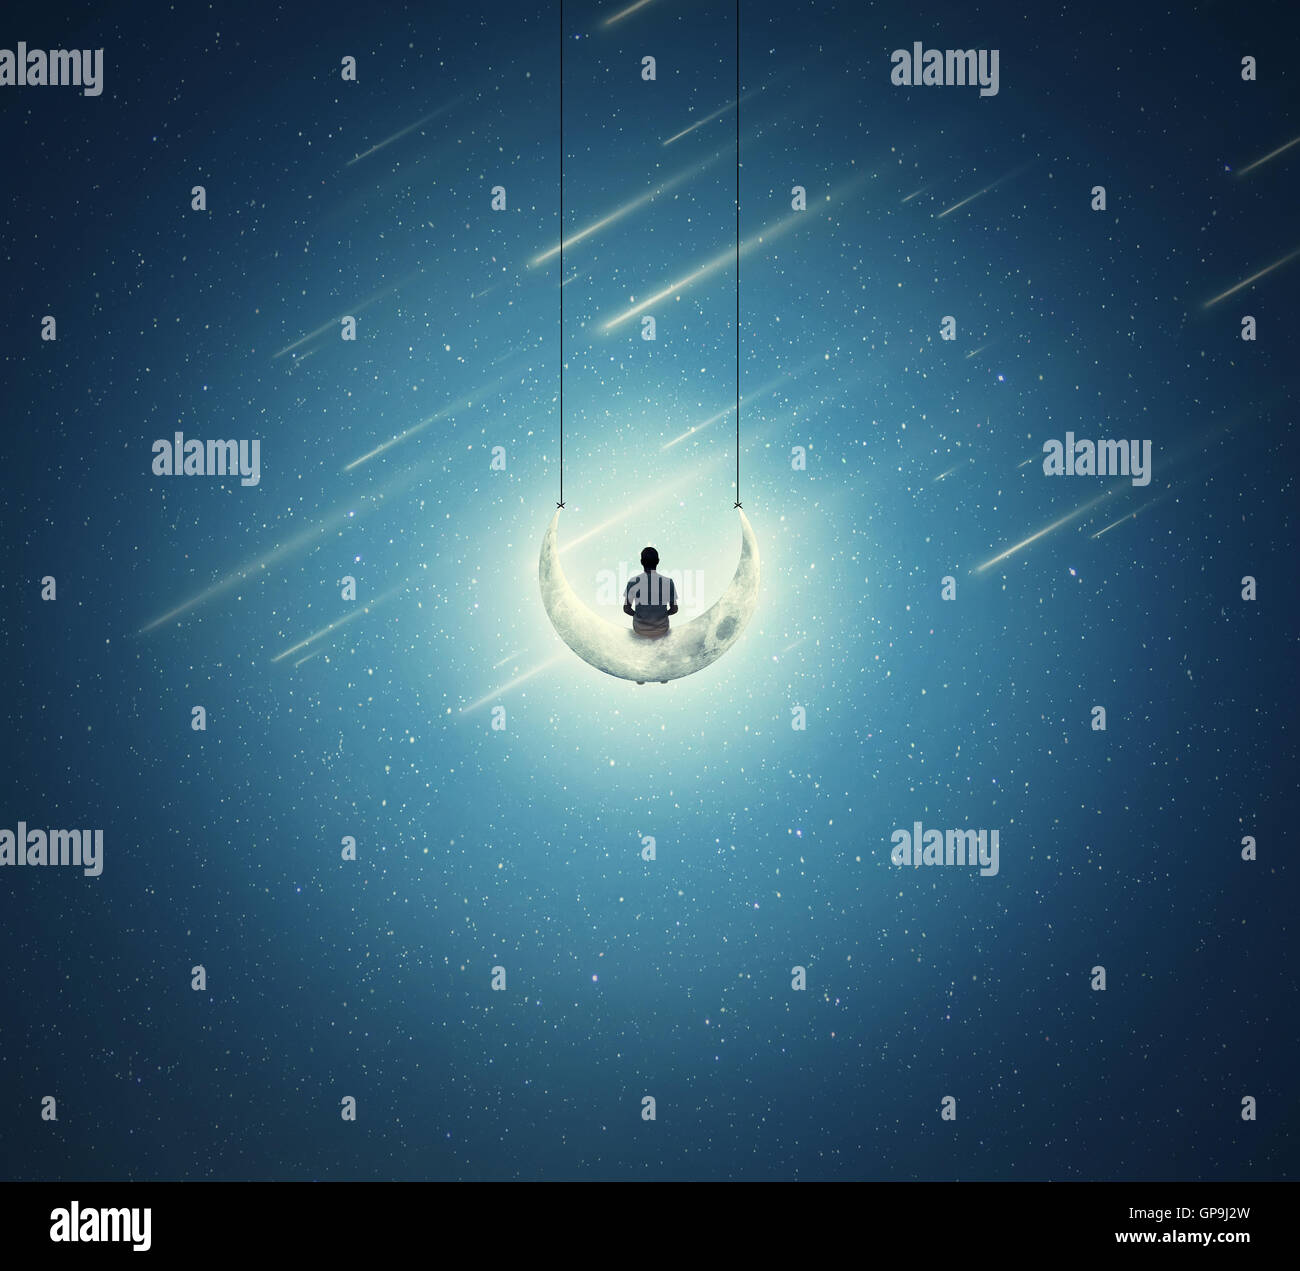 Contexte surréaliste avec un seul garçon assis sur un croissant de lune, comme une balançoire, sur un ciel étoilé Banque D'Images